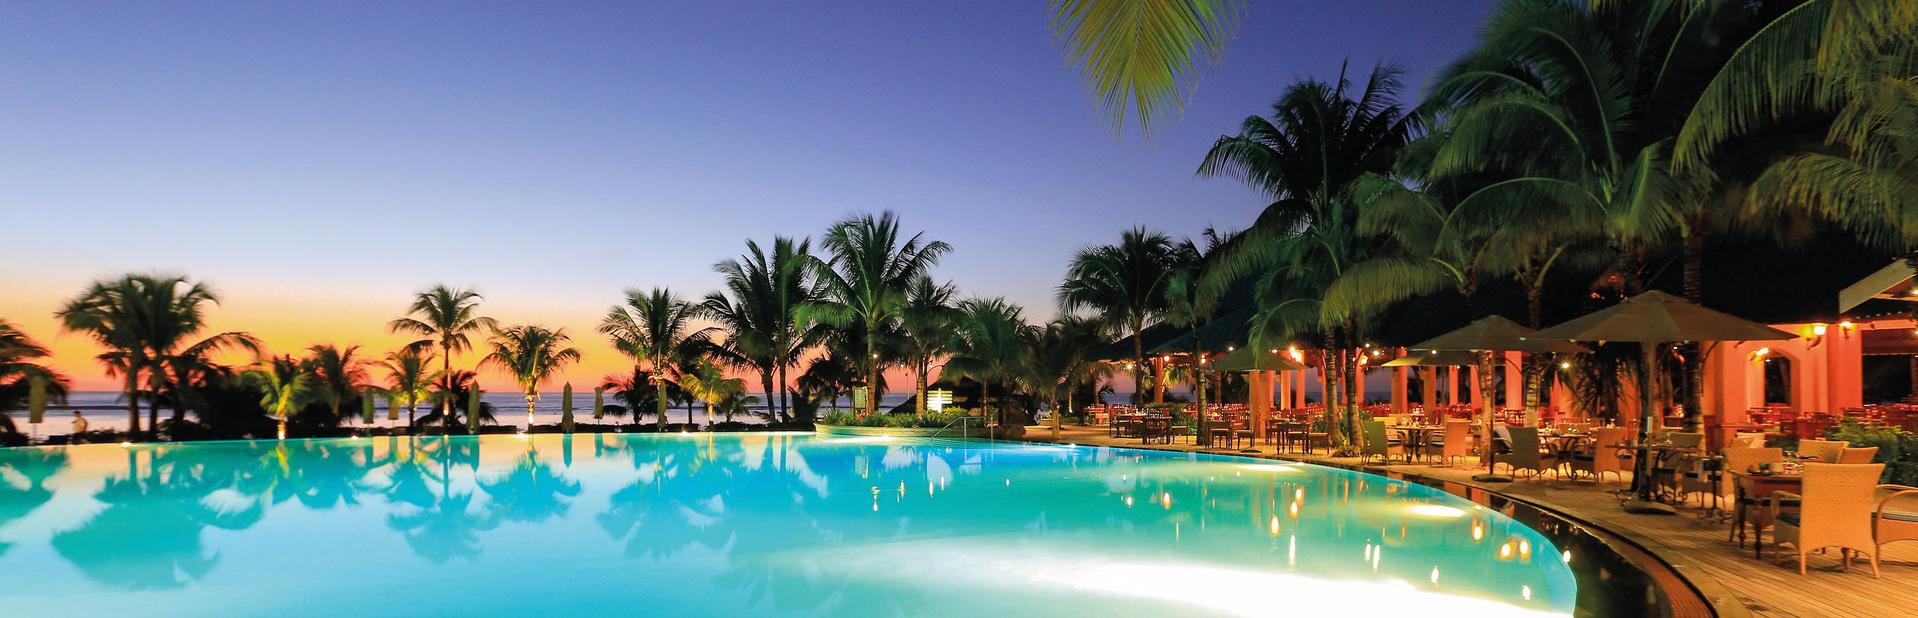 Отель Victoria Beachcomber Resort & Spa на Маврикии